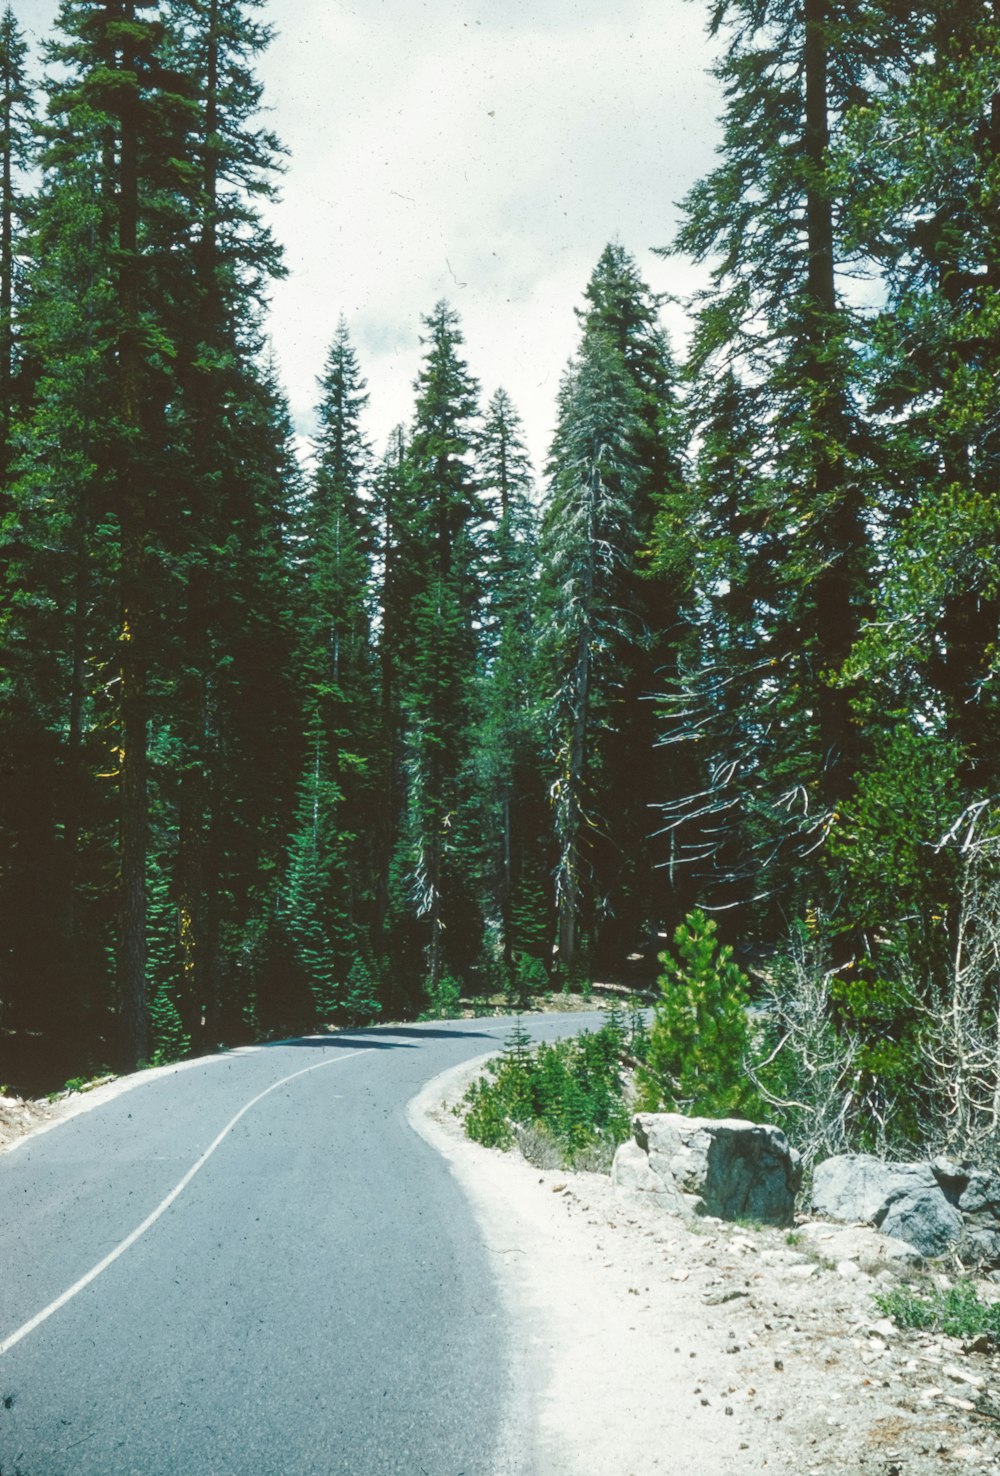 Un camino curvo en medio de un bosque